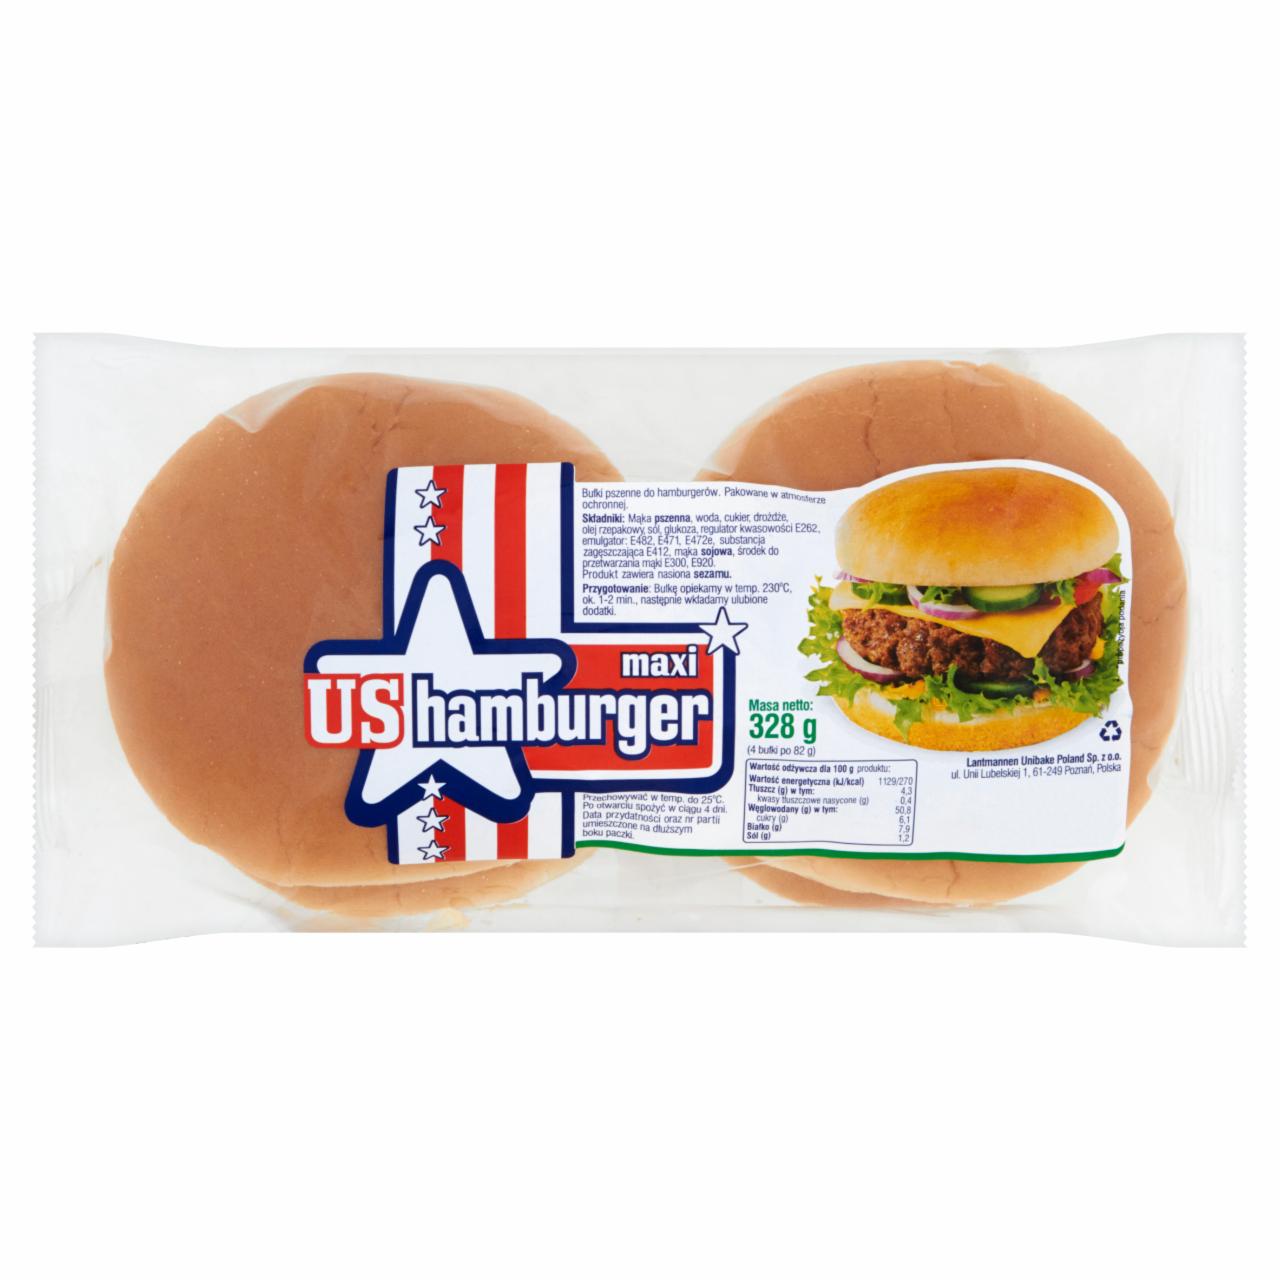 Zdjęcia - US Hamburger Maxi Bułki pszenne do hamburgerów 328 g (4 sztuki)